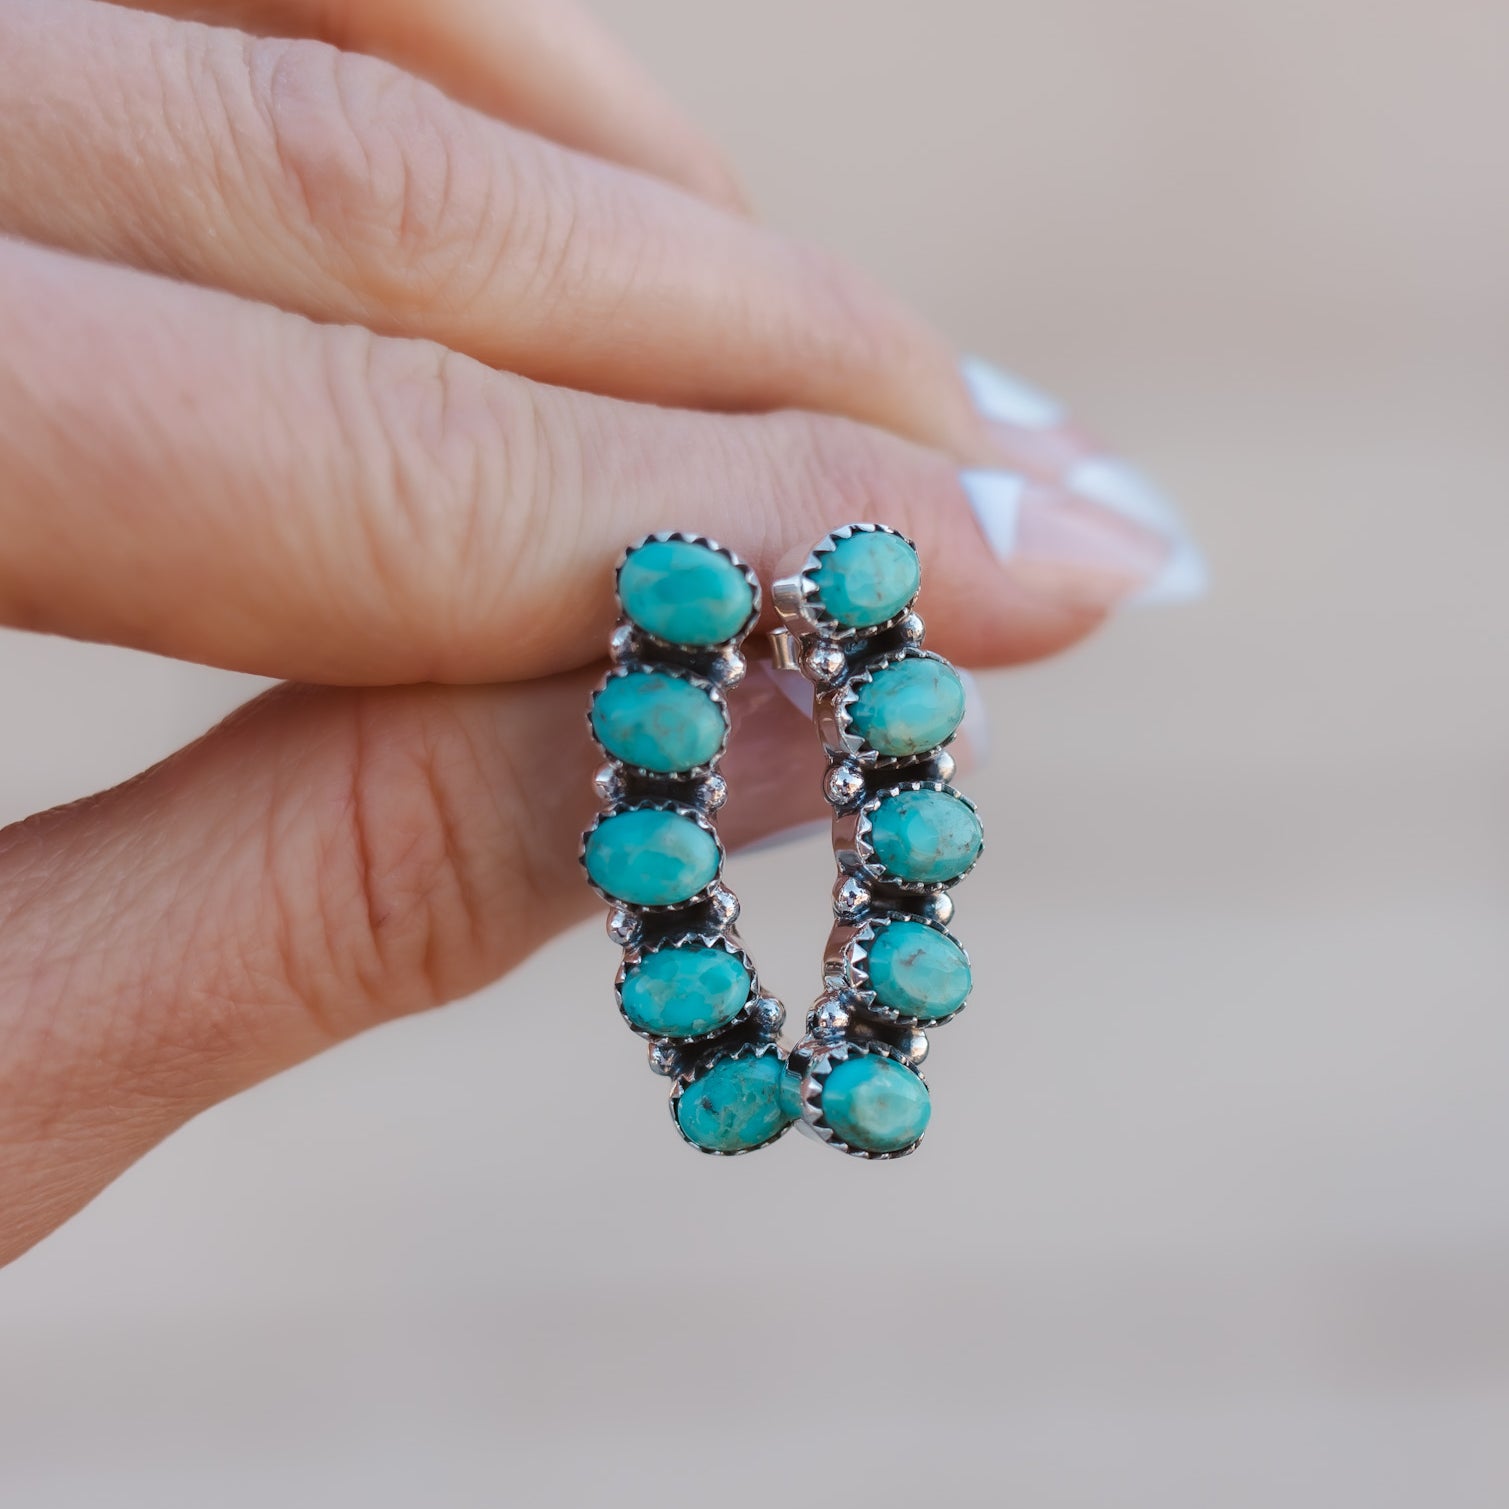 Angel Stone Sterling Silver Earrings | PREORDER NOW OPEN-Earrings-Krush Kandy, Women's Online Fashion Boutique Located in Phoenix, Arizona (Scottsdale Area)